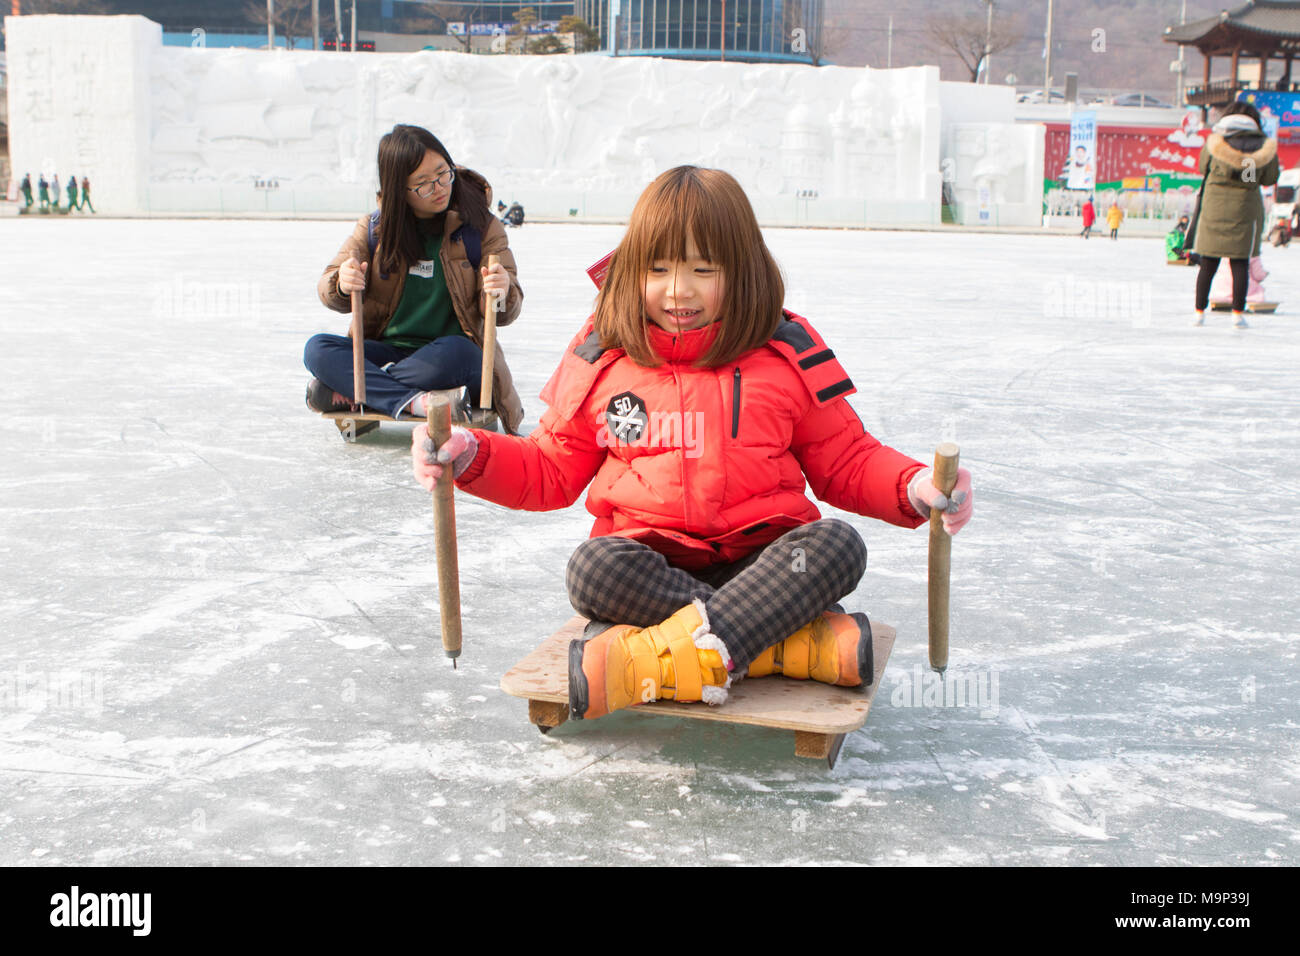 Due ragazze spingono in avanti su slittini al Hwacheon Sancheoneo Festival di ghiaccio. Il Hwacheon Sancheoneo Festival di ghiaccio è una tradizione per il popolo coreano. Ogni anno nel mese di gennaio la folla si riuniranno presso il fiume congelato per celebrare il freddo e la neve dell'inverno. Attrazione principale è la pesca sul ghiaccio. Giovani e vecchi attendere pazientemente su un piccolo buco nel ghiaccio per una trota di mordere. In tende possono lasciare il pesce grigliato dopo che loro sono mangiati. Tra le altre attività sono corse in slittino e pattinaggio sul ghiaccio. La vicina regione Pyeongchang ospiterà le Olimpiadi Invernali nel febbraio 2018. Foto Stock